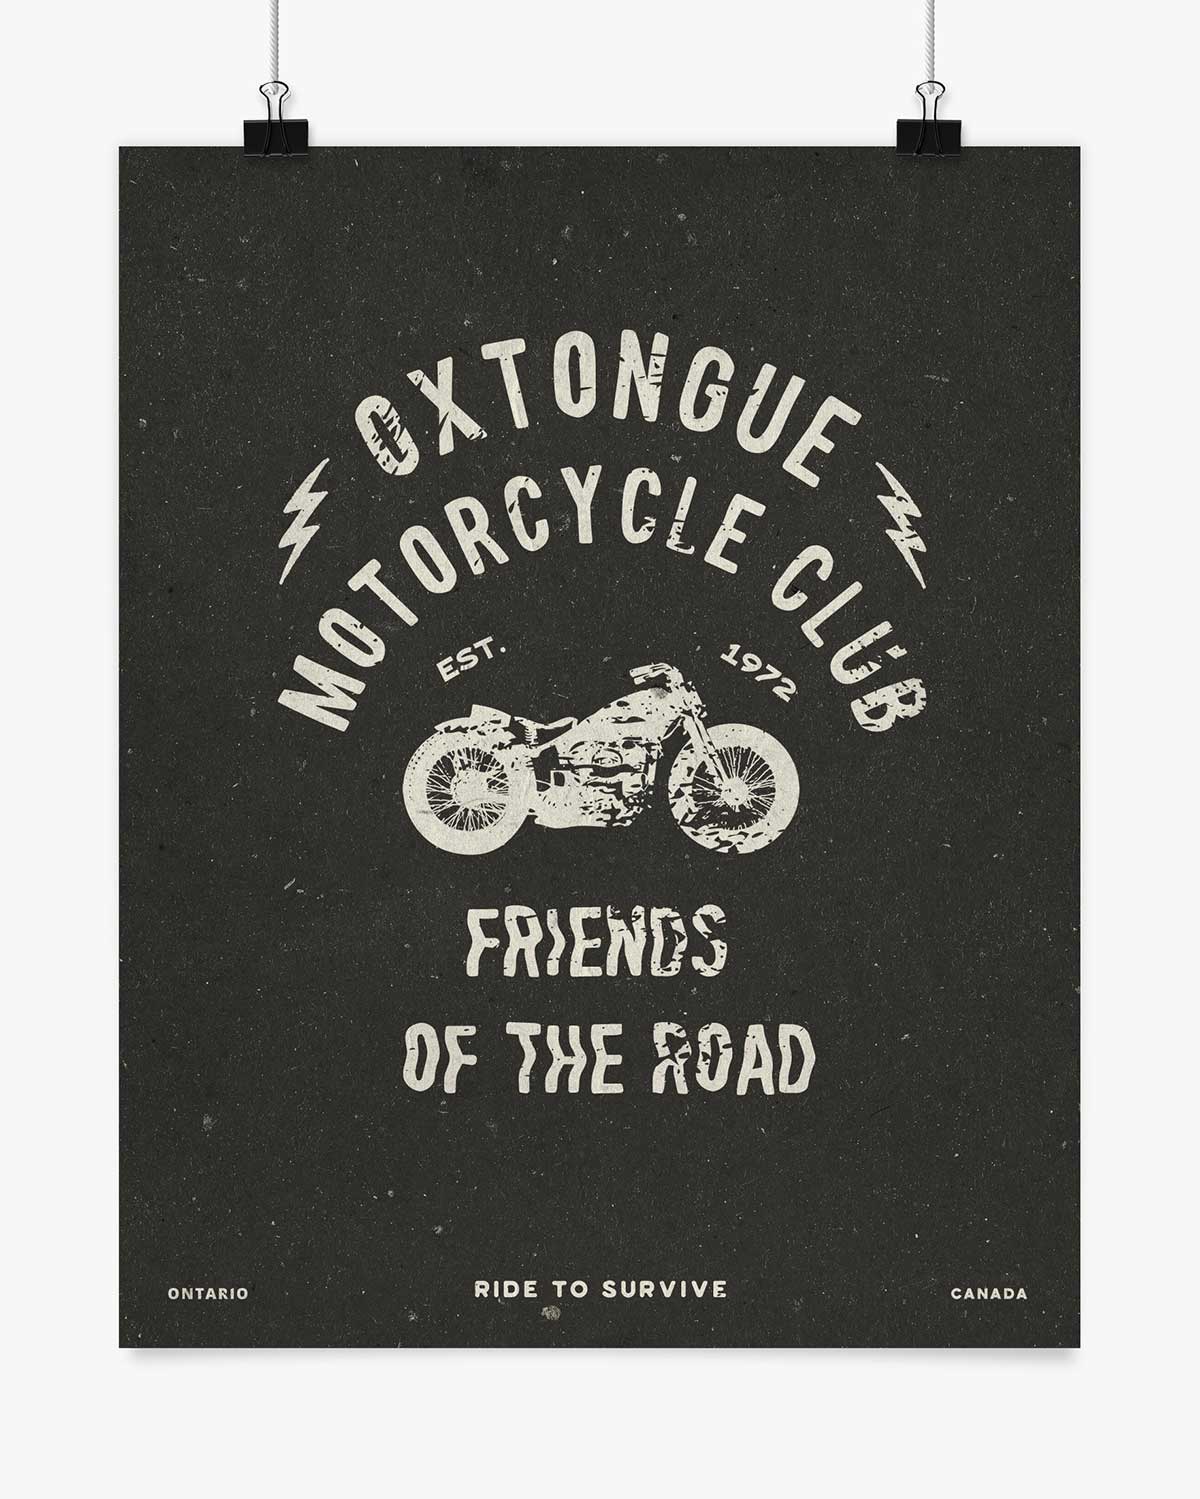 Motorcycle Club - Oxtongue Lake - Wall Art